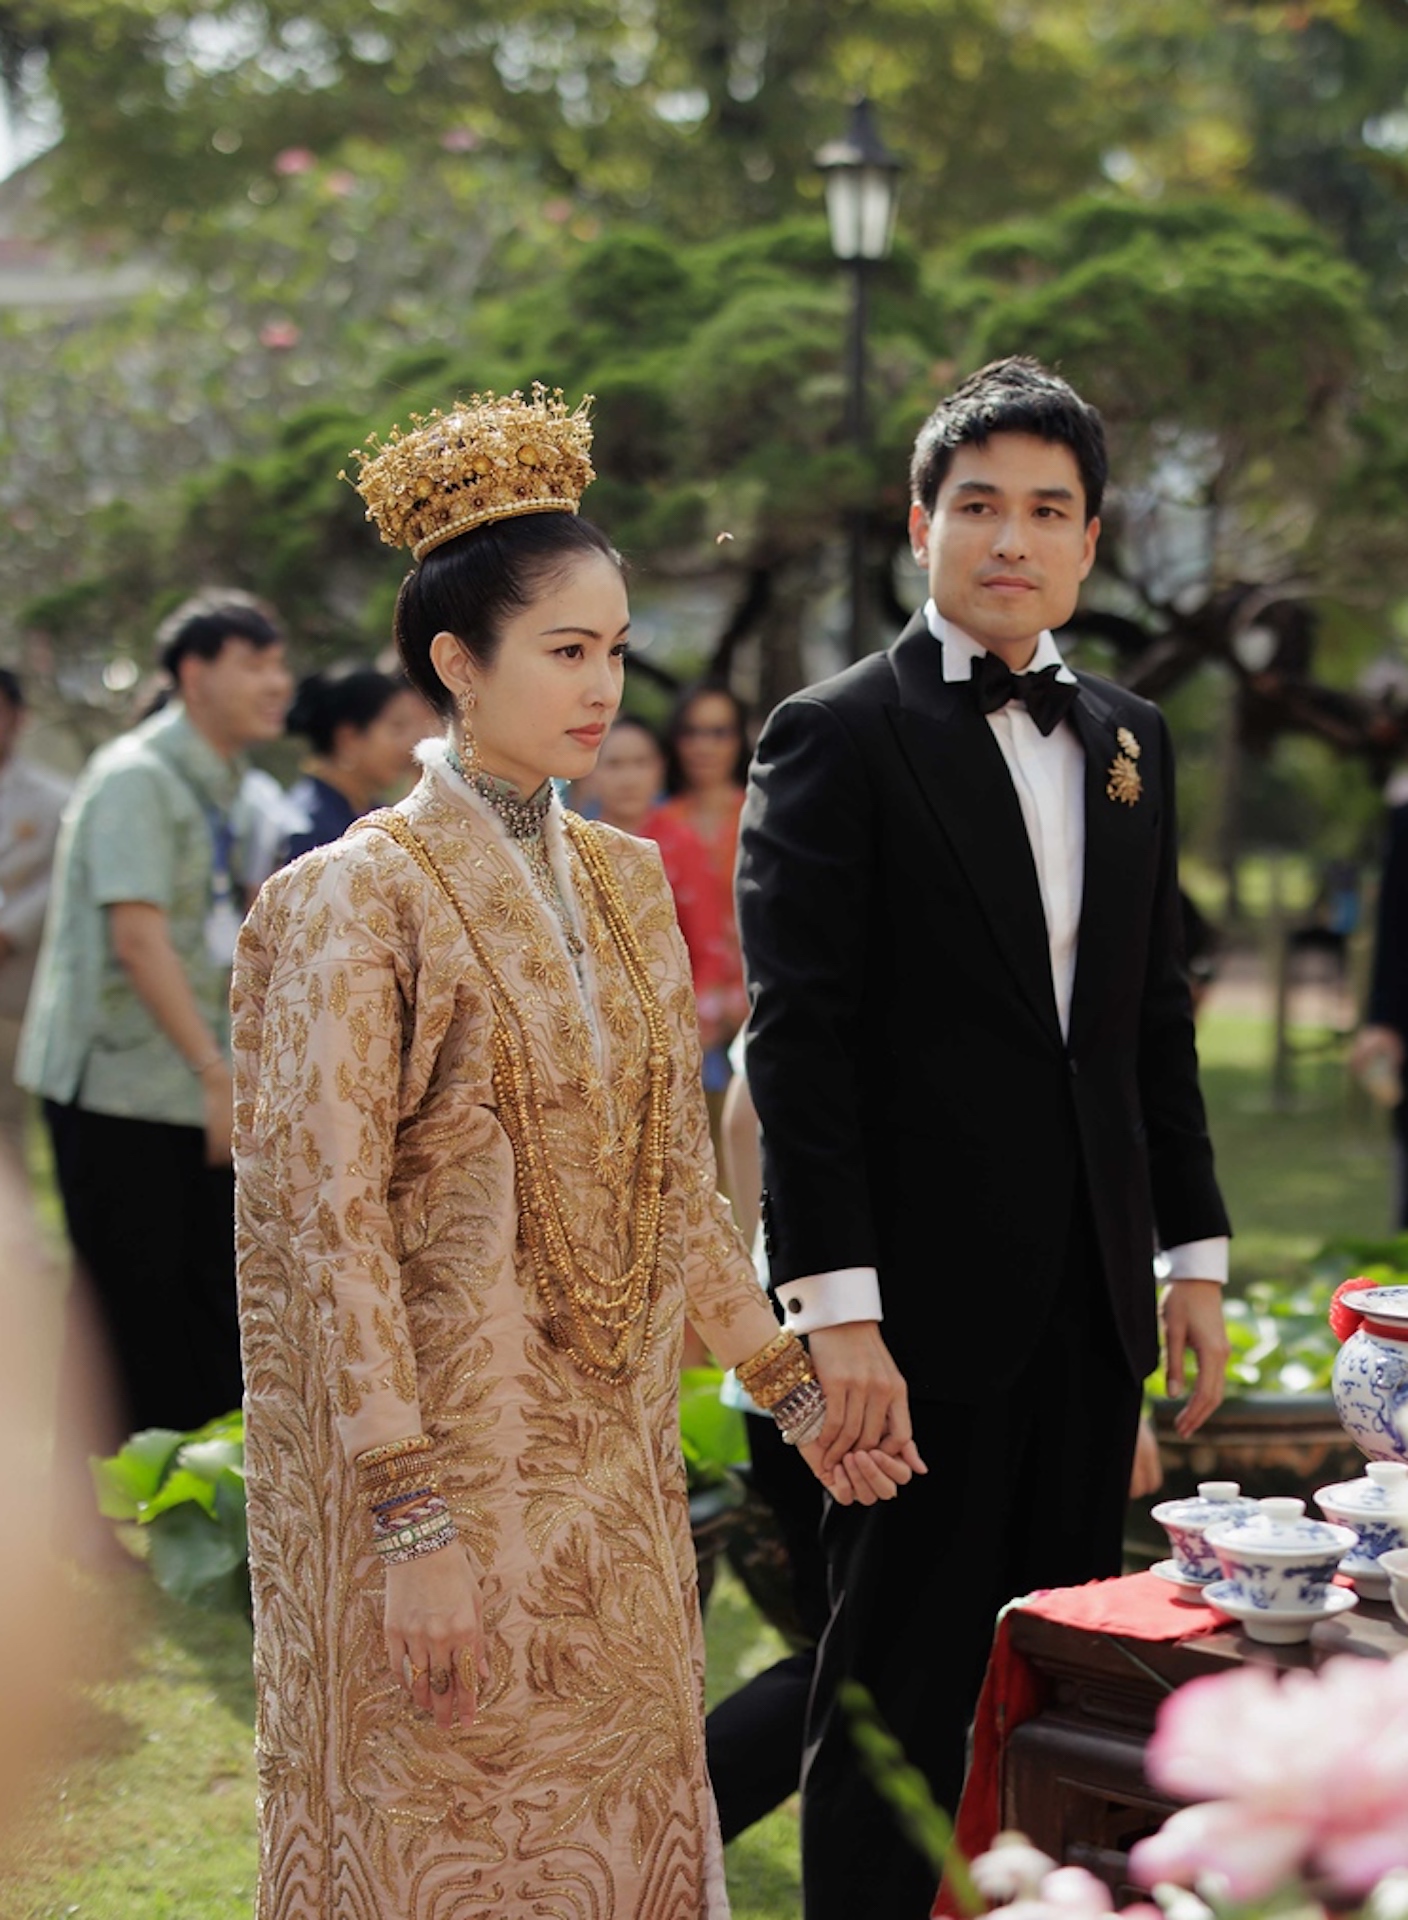 Hôn lễ truyền thống của 'hoa hậu chuyển giới đẹp nhất Thái Lan' với chồng doanh nhân - Ảnh 3.